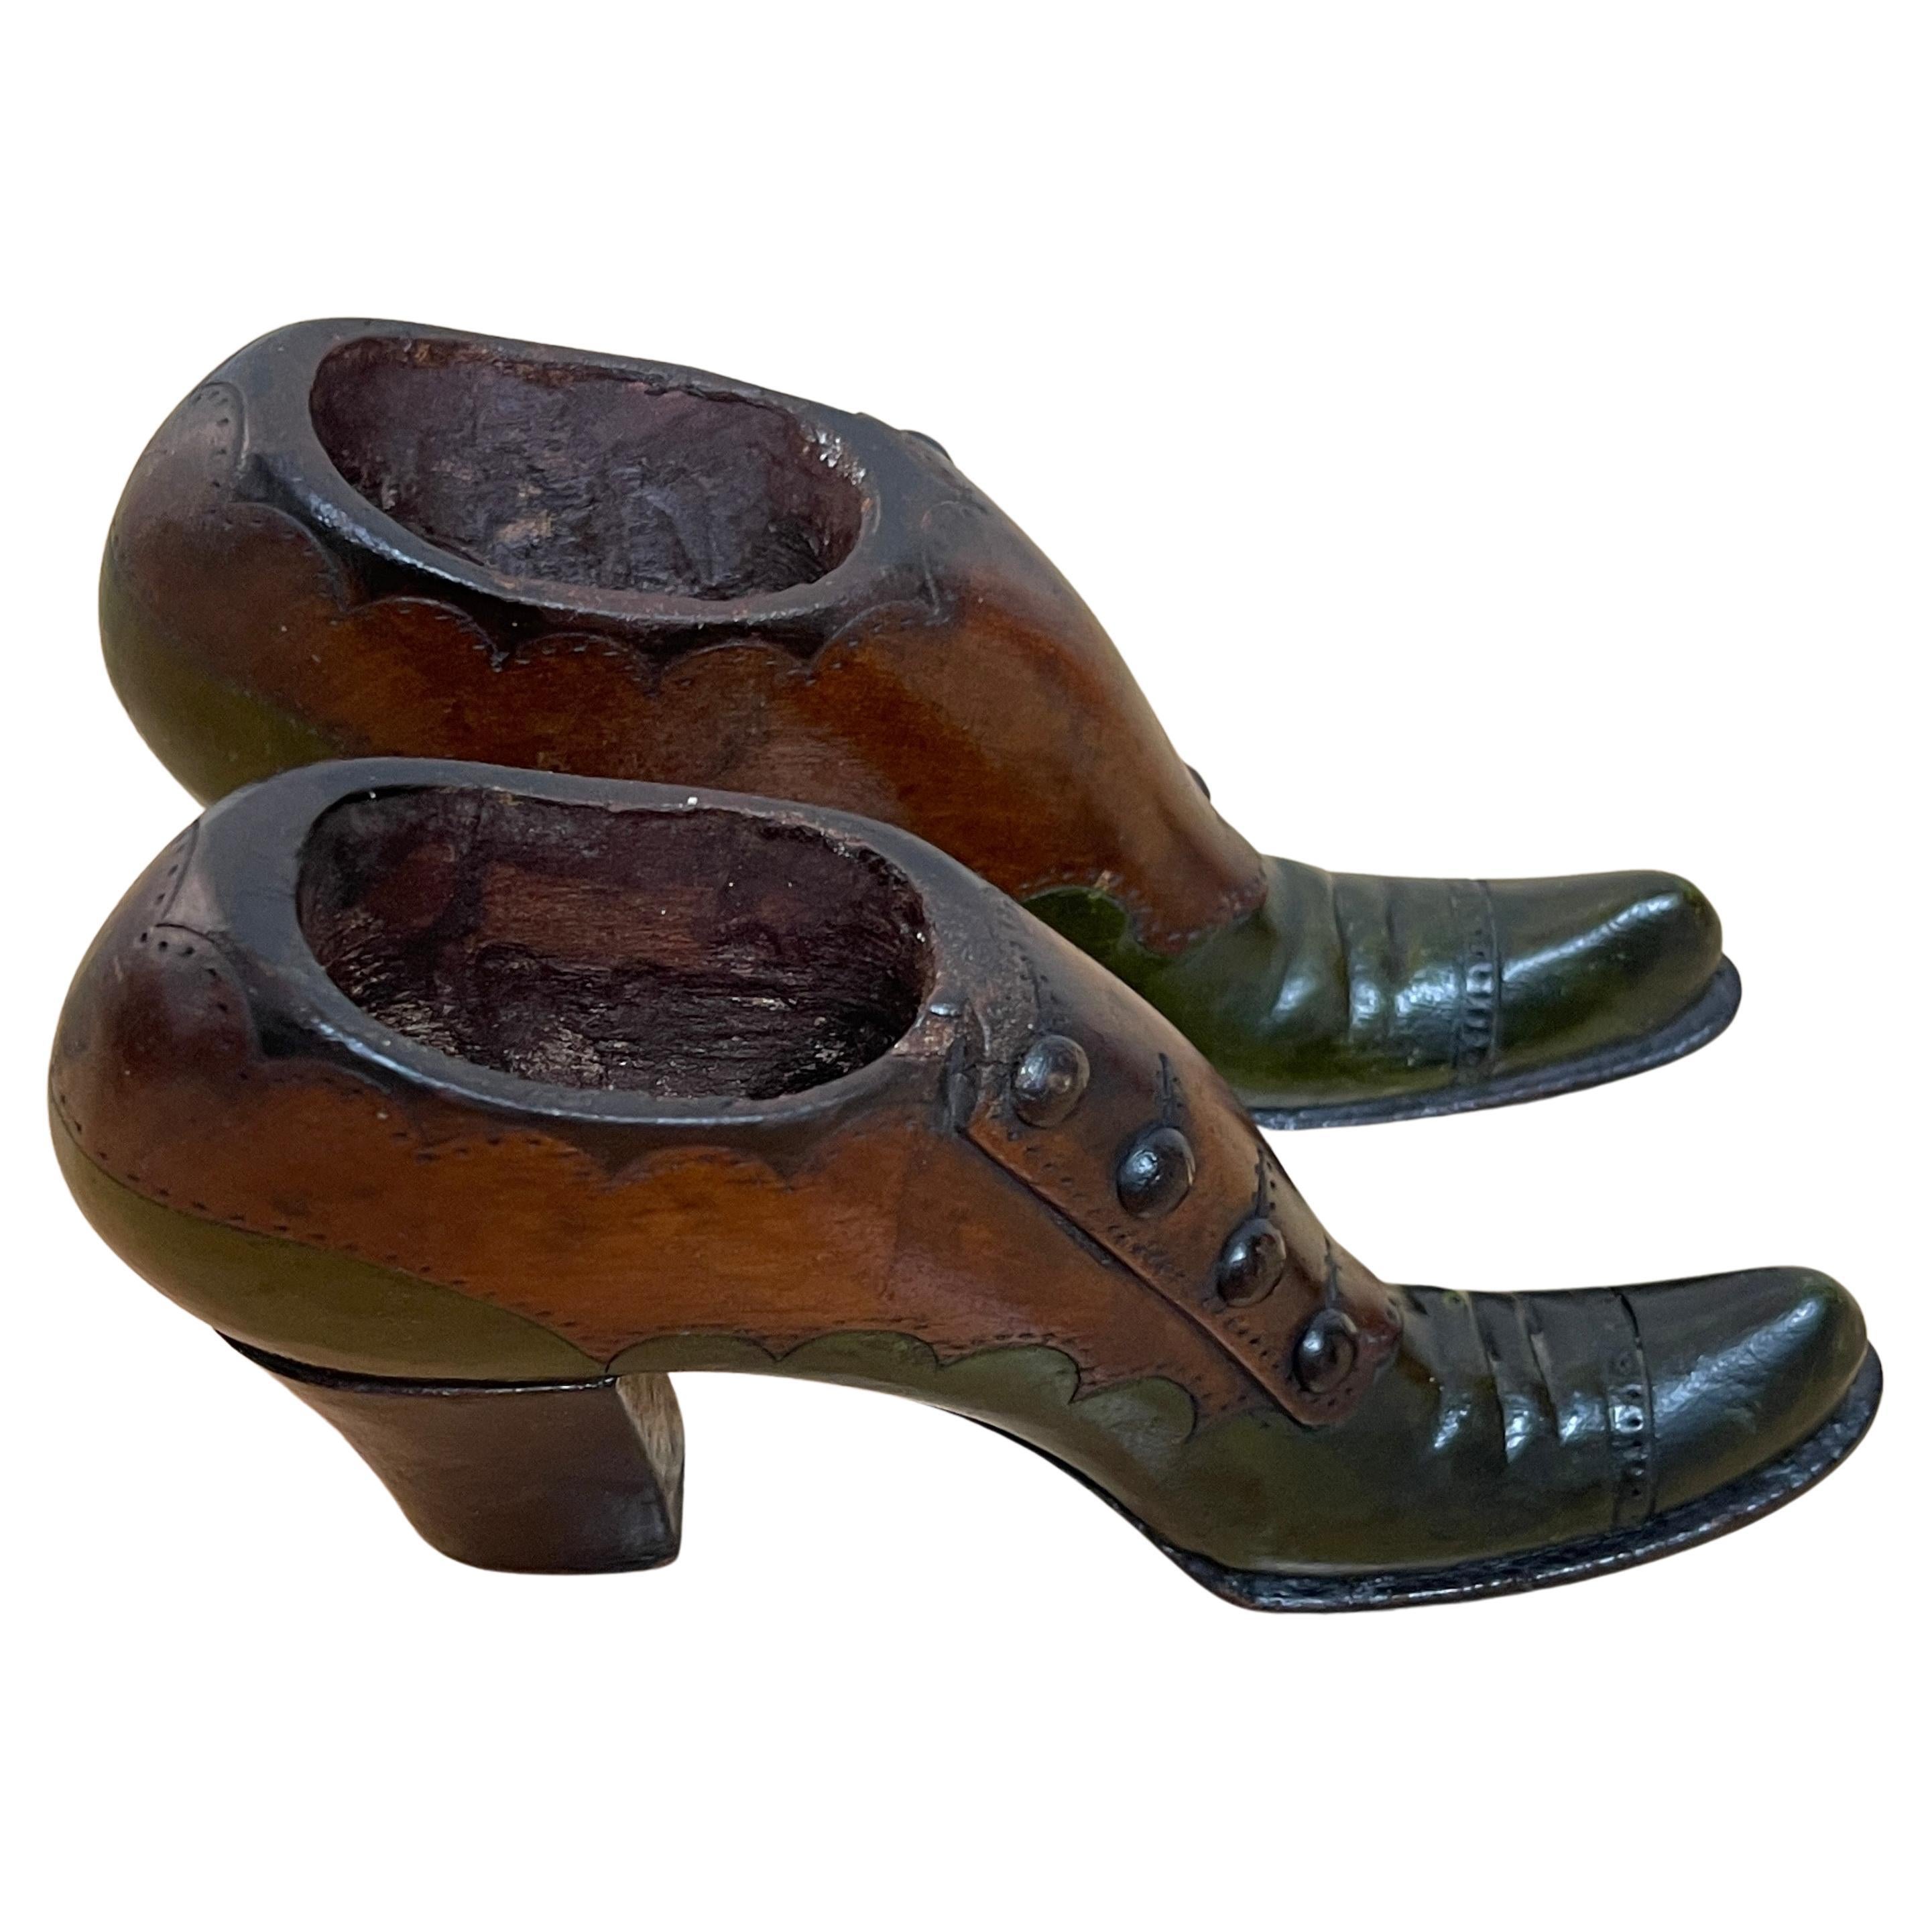 Paire d'échantillons/modèles de bottes en cuir de vendeur en bois dur sculpté de style Régence anglaise.
Angleterre, vers 1820

Remarquable exemple intact d'une paire d'échantillons de bottes de vendeur en cuir en bois dur sculpté et polychromé. La